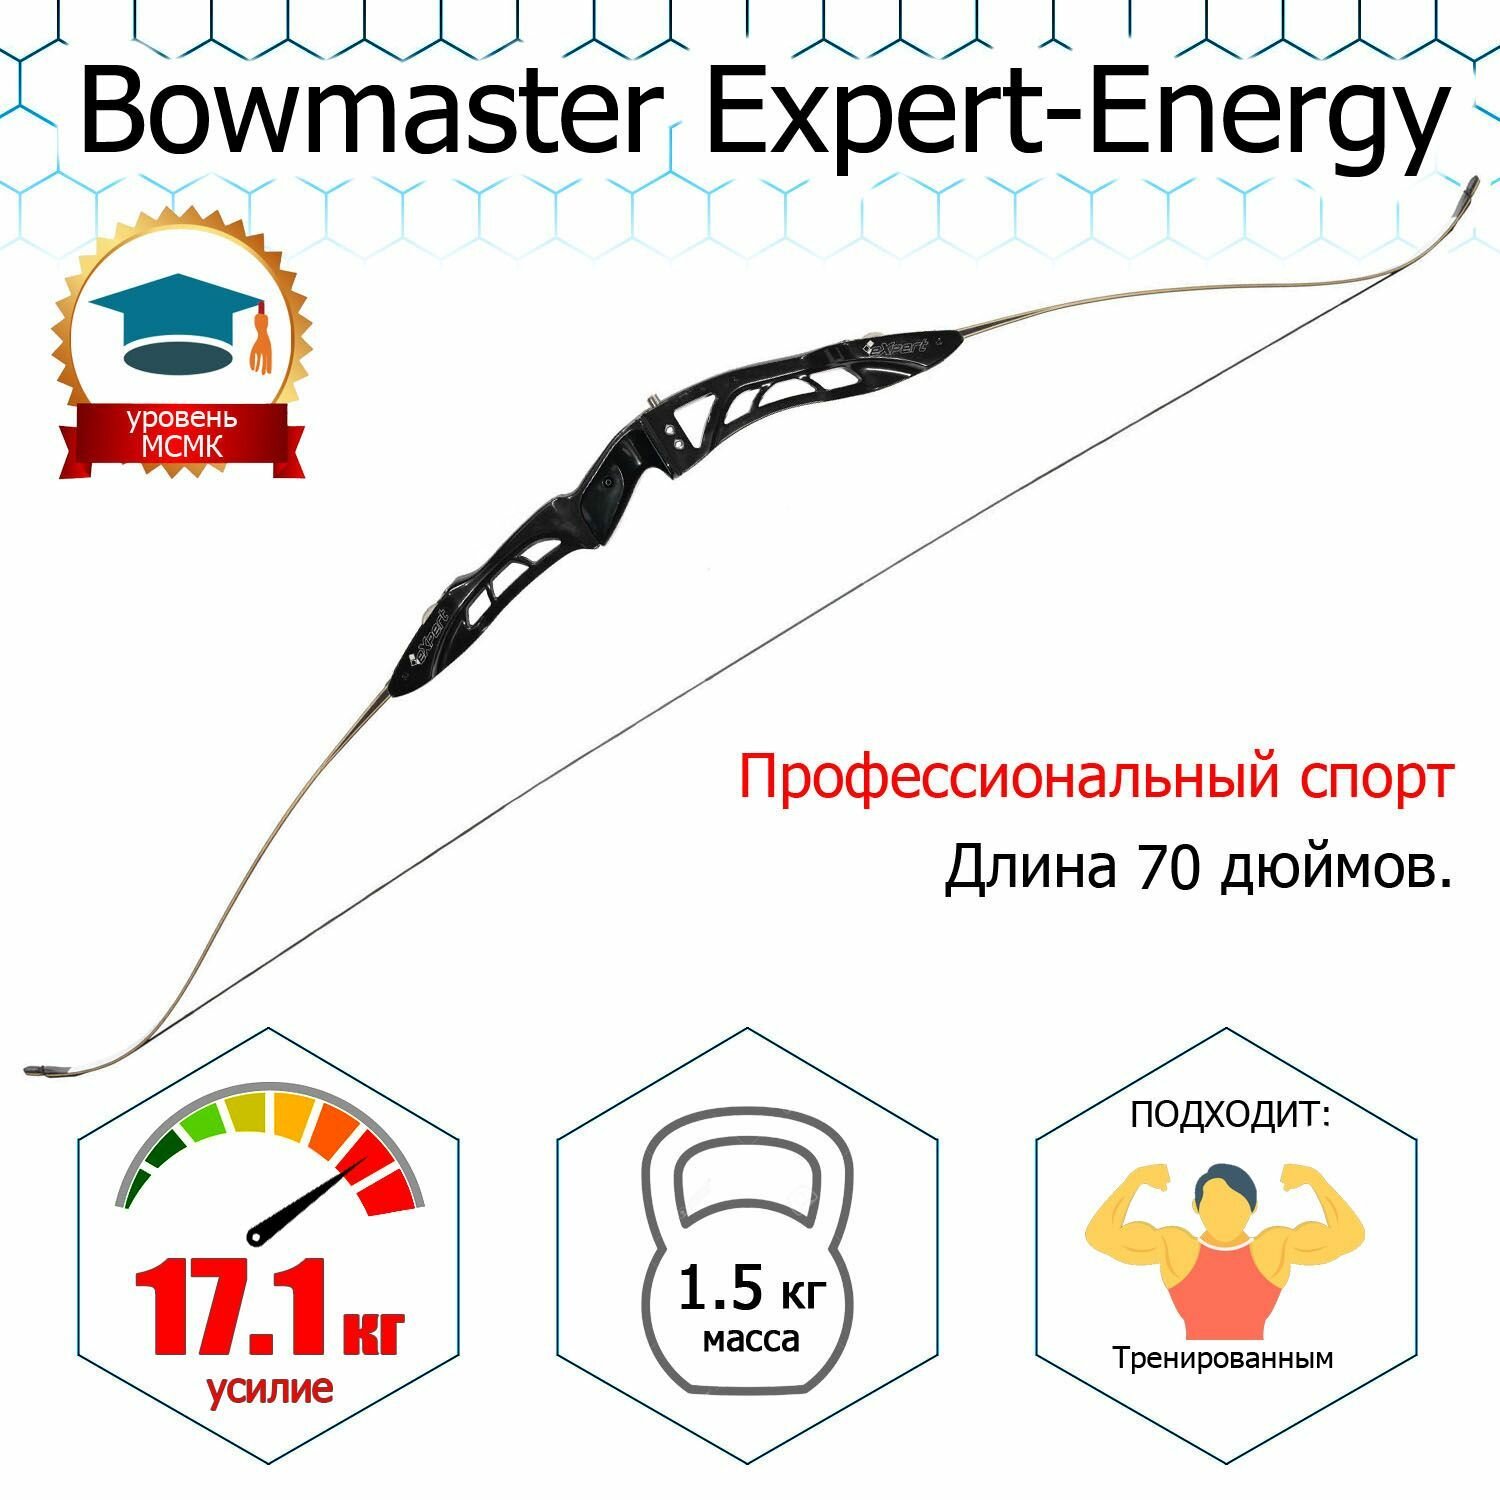 Лук турнирный классический Bowmaster Energy - Expert 70" 38#, Rh, черный